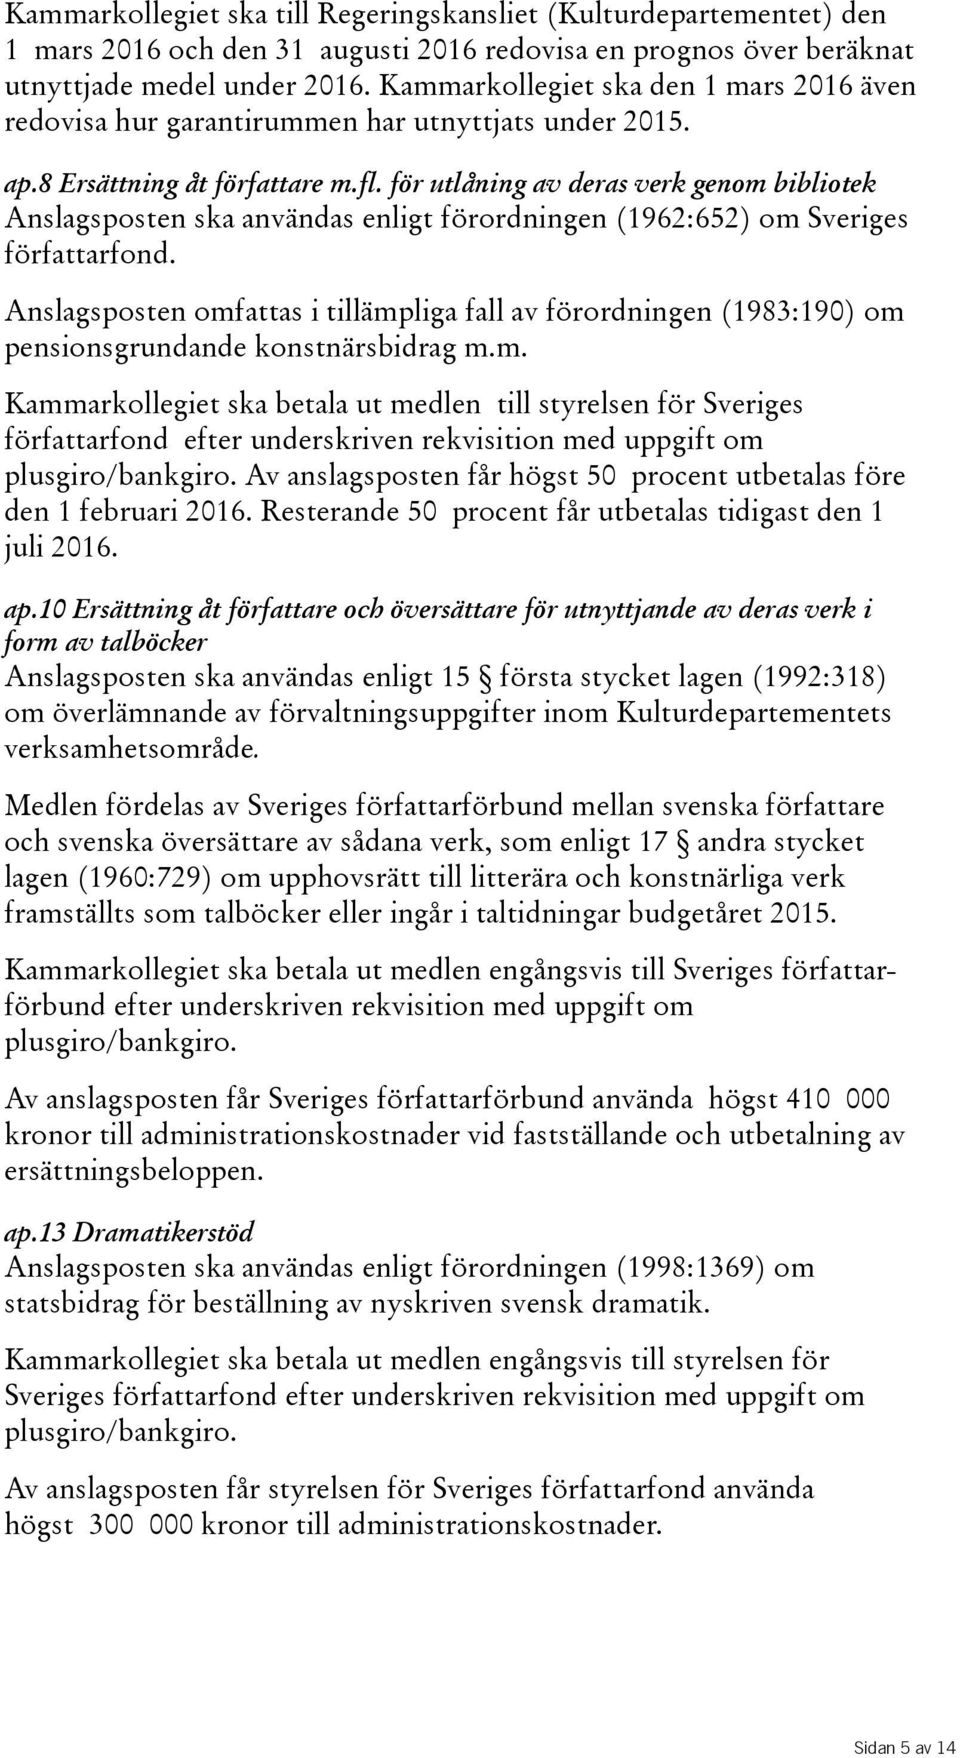 för utlåning av deras verk genom bibliotek Anslagsposten ska användas enligt förordningen(1962:652) om Sveriges författarfond.